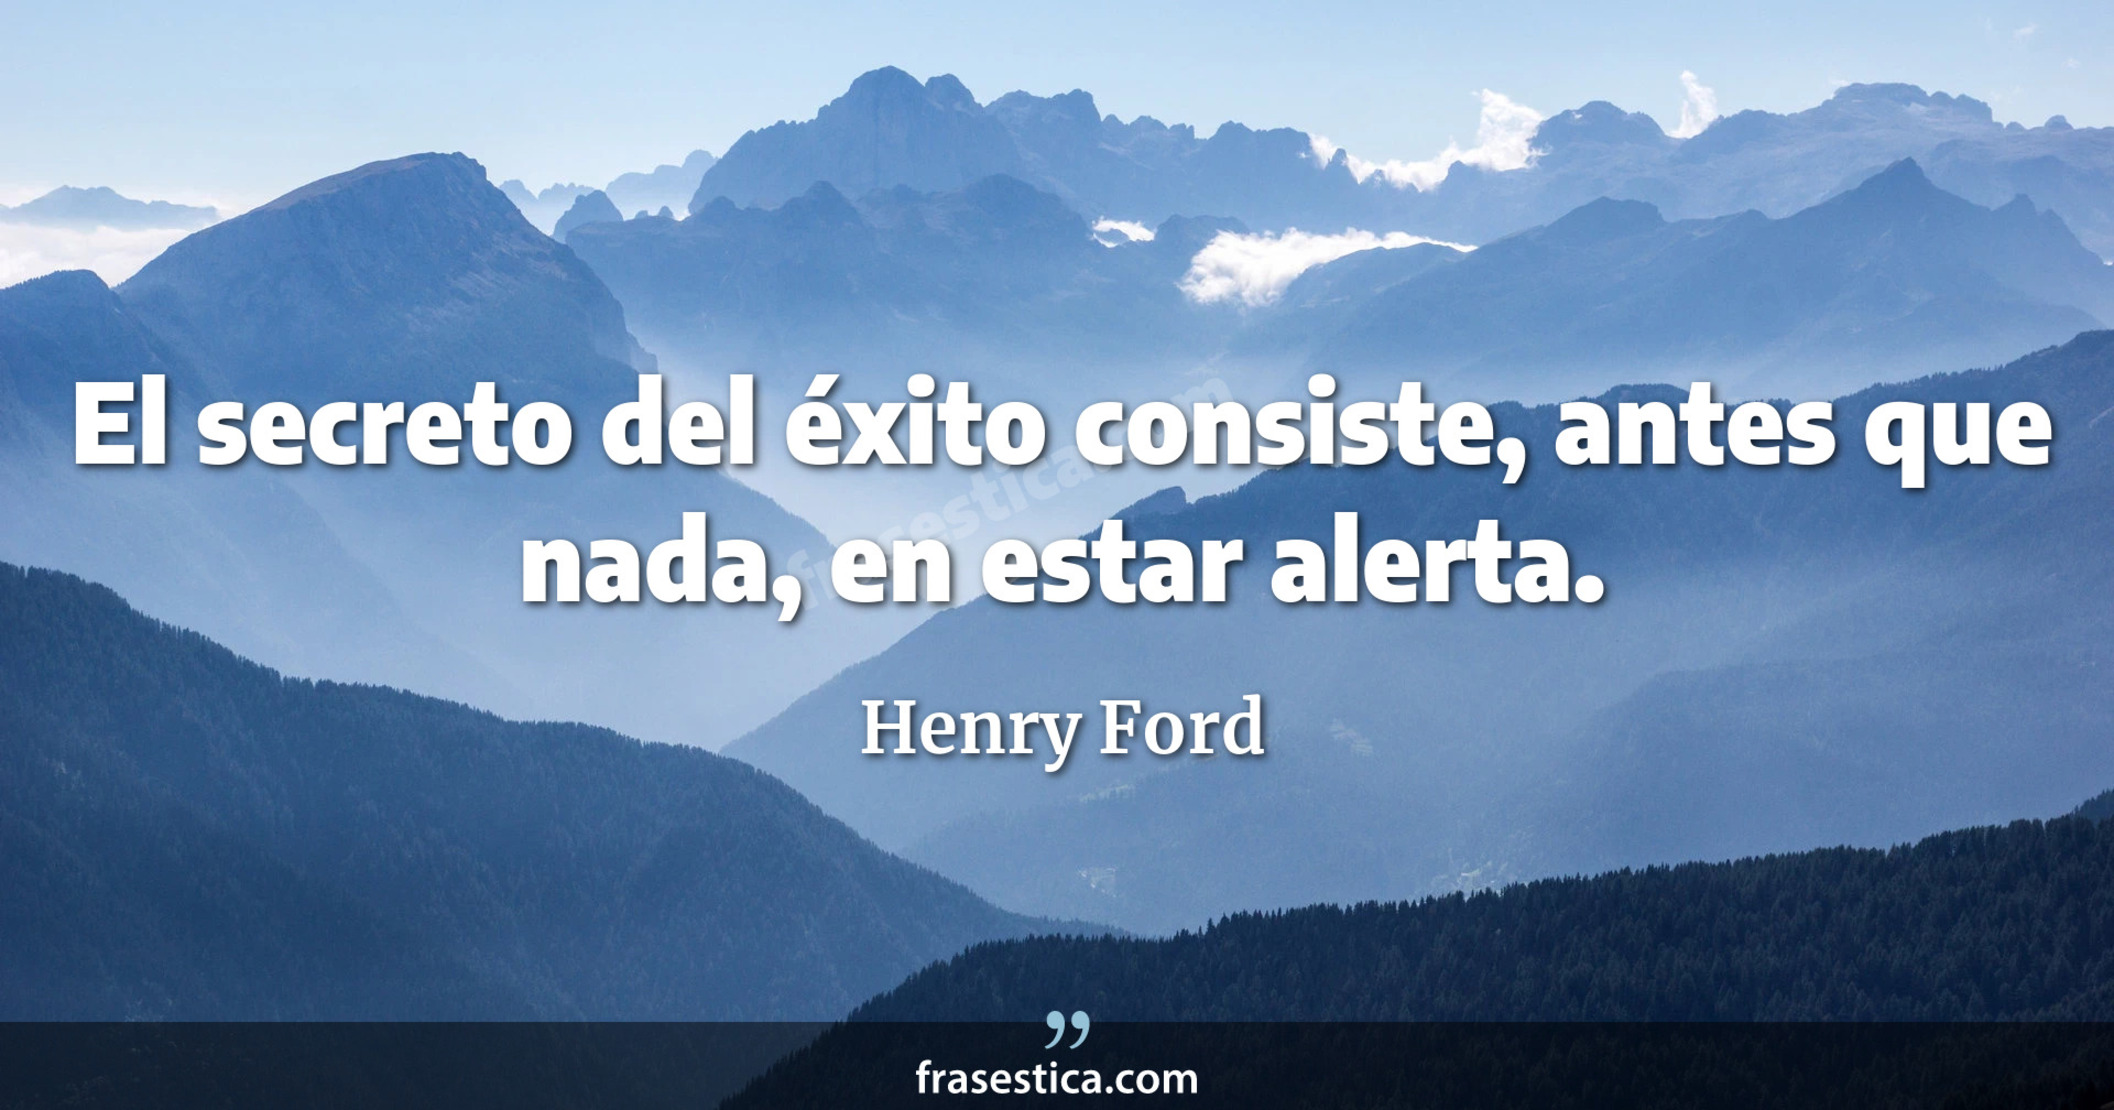 El secreto del éxito consiste, antes que nada, en estar alerta. - Henry Ford